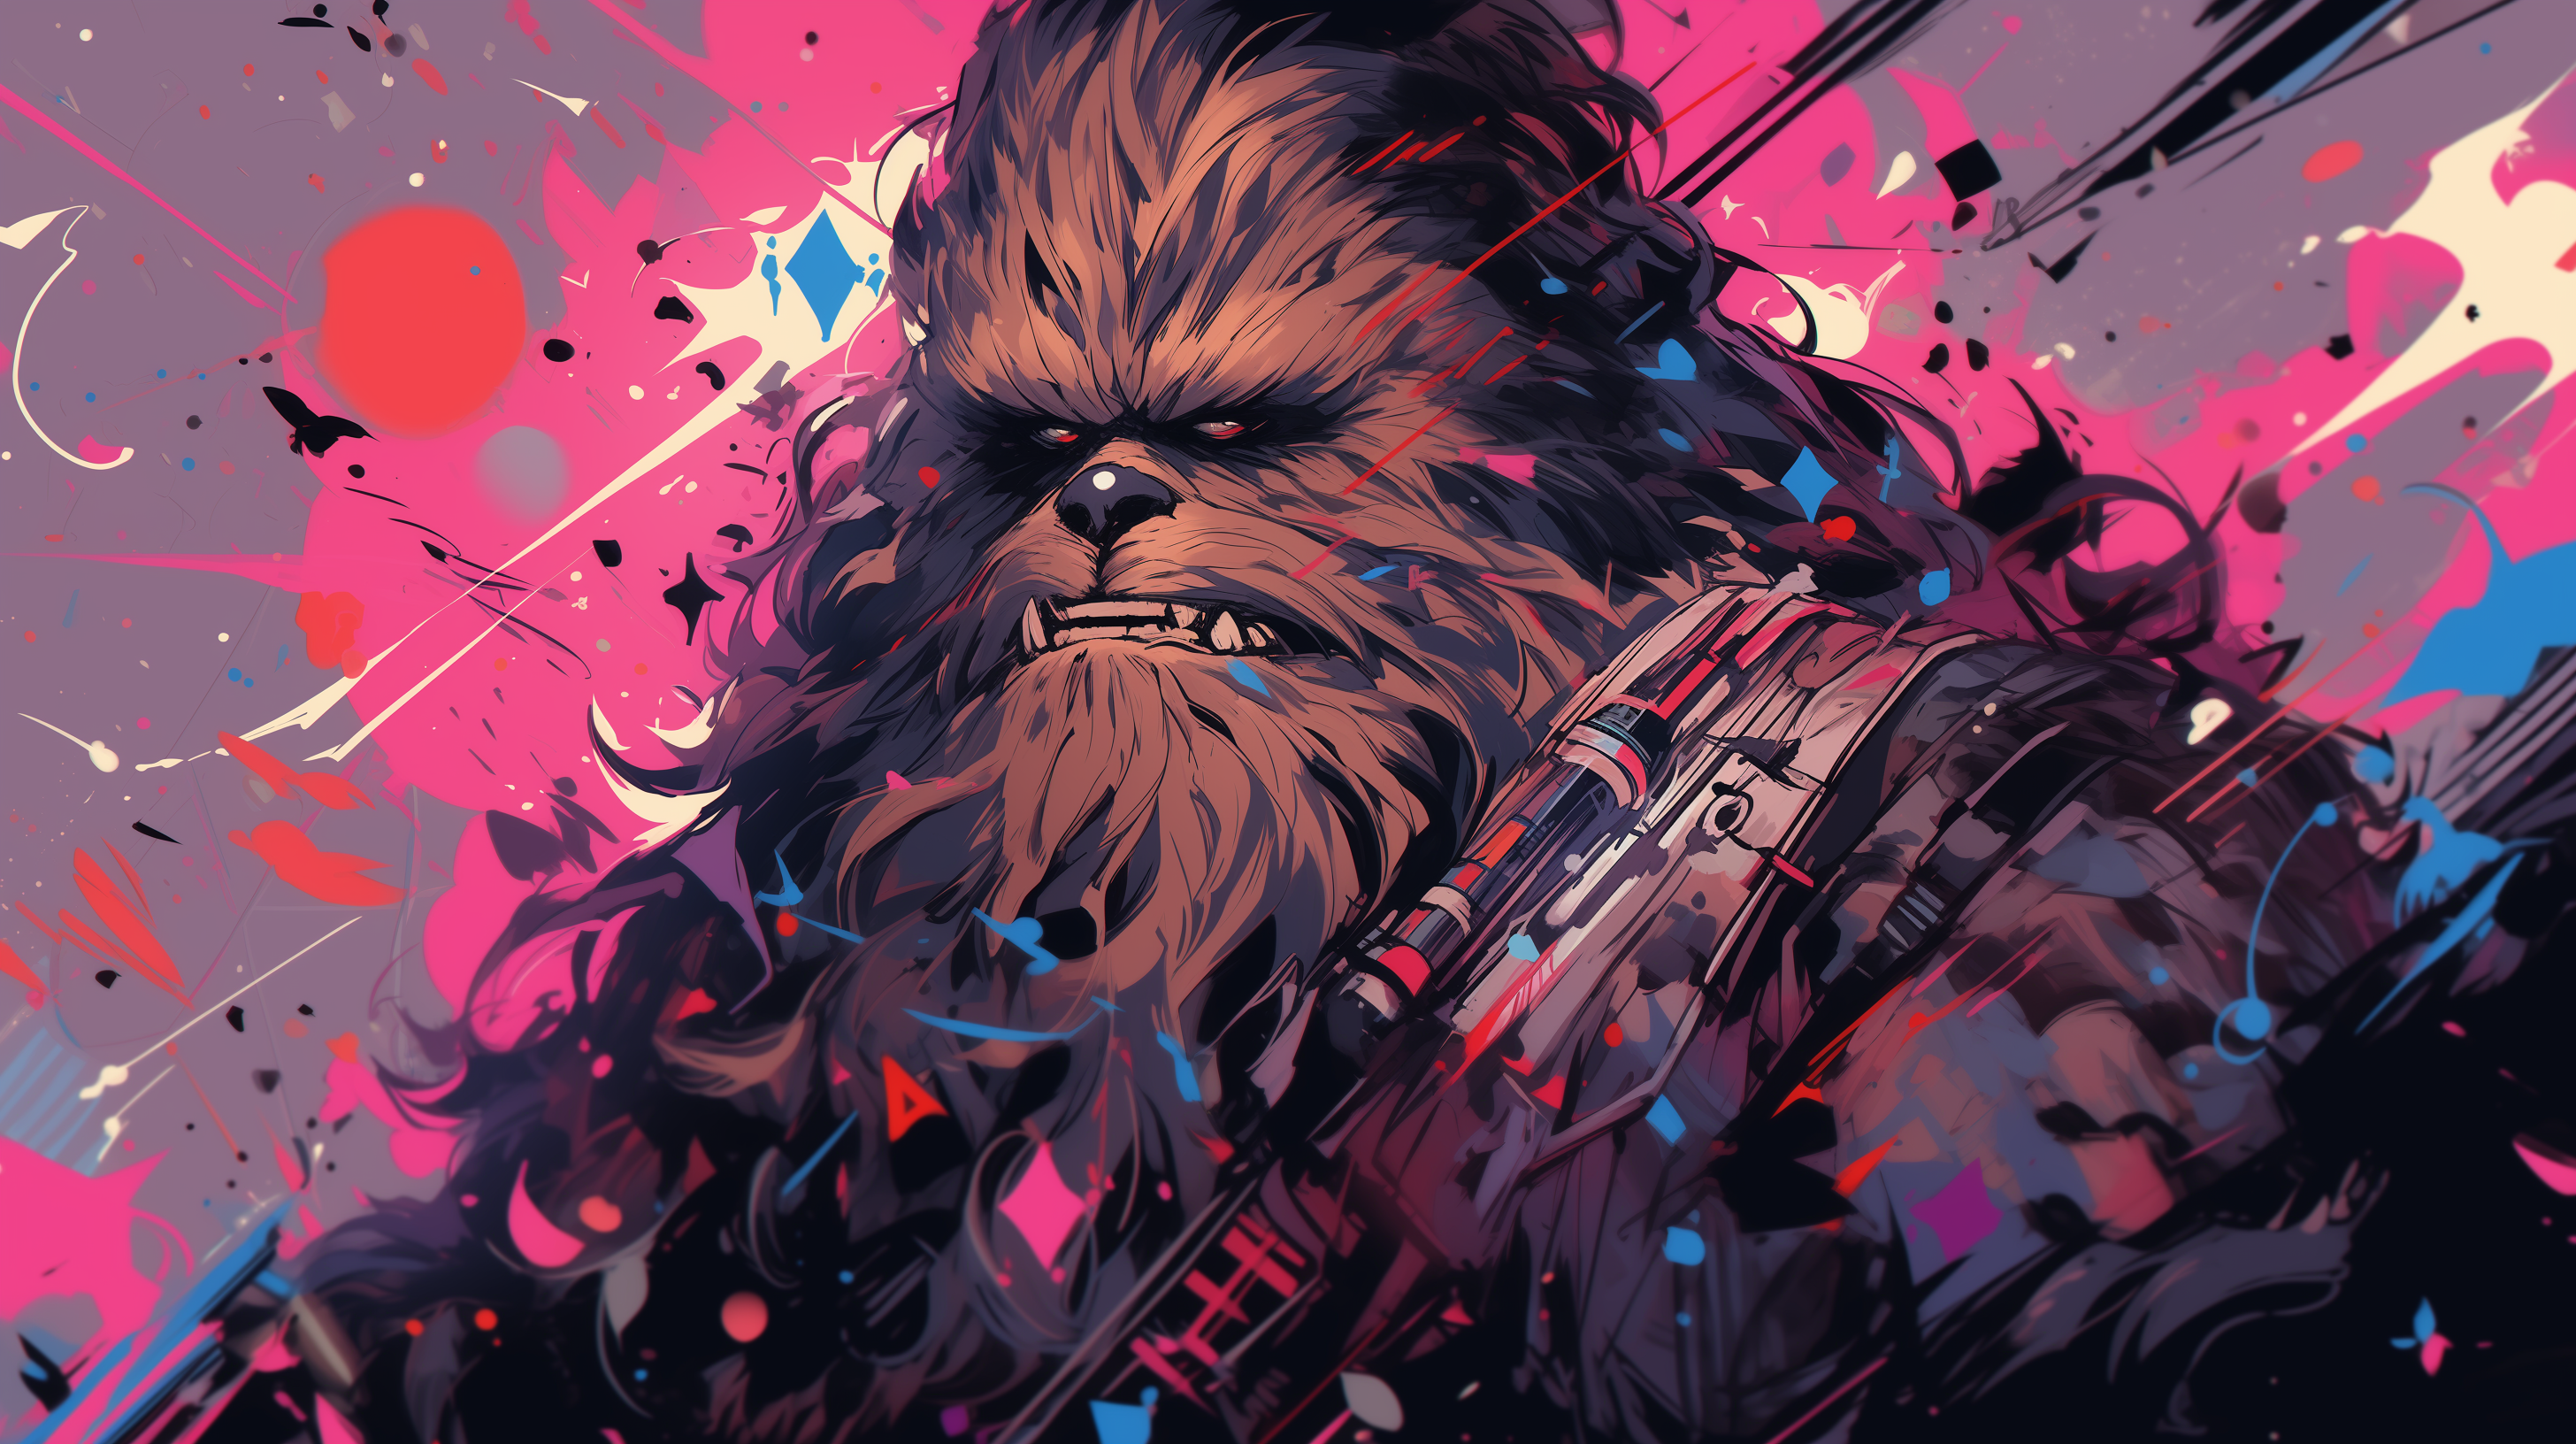 Star Wars Darth Vader Desktop Wallpaper - Star Wars Wallpaper 4K